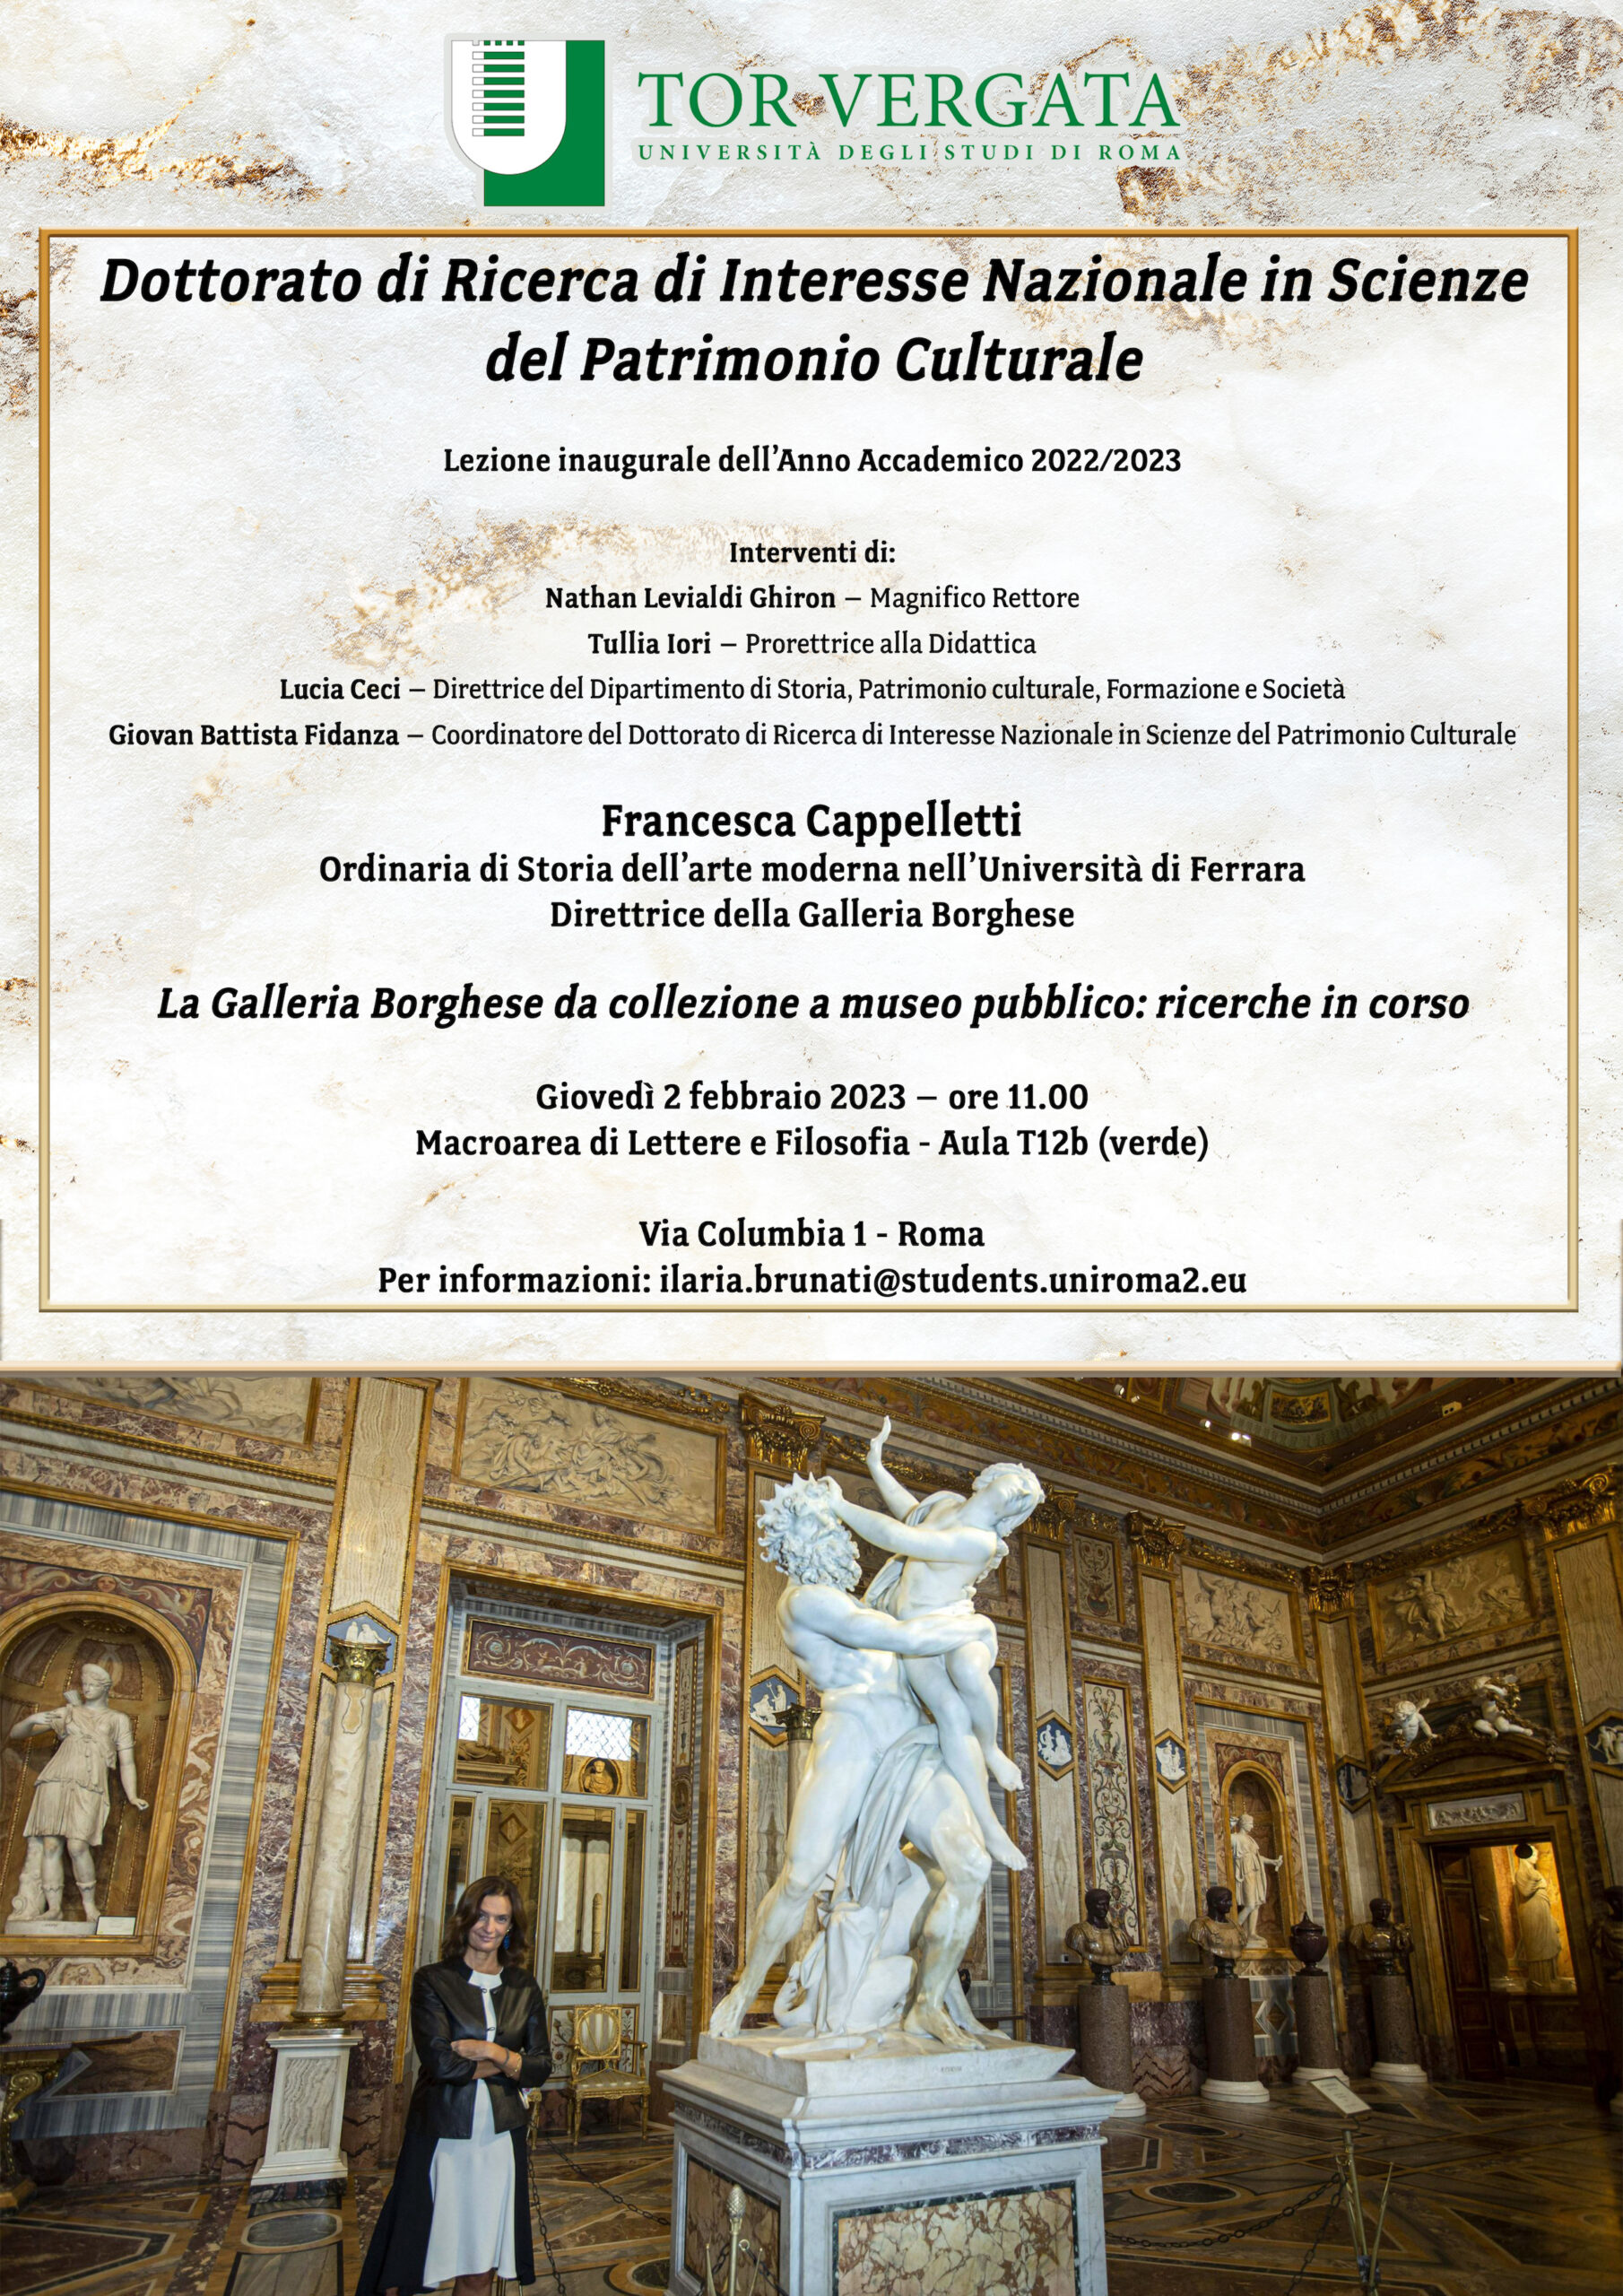 La Galleria Borghese da collezione a museo pubblico: ricerche in corso